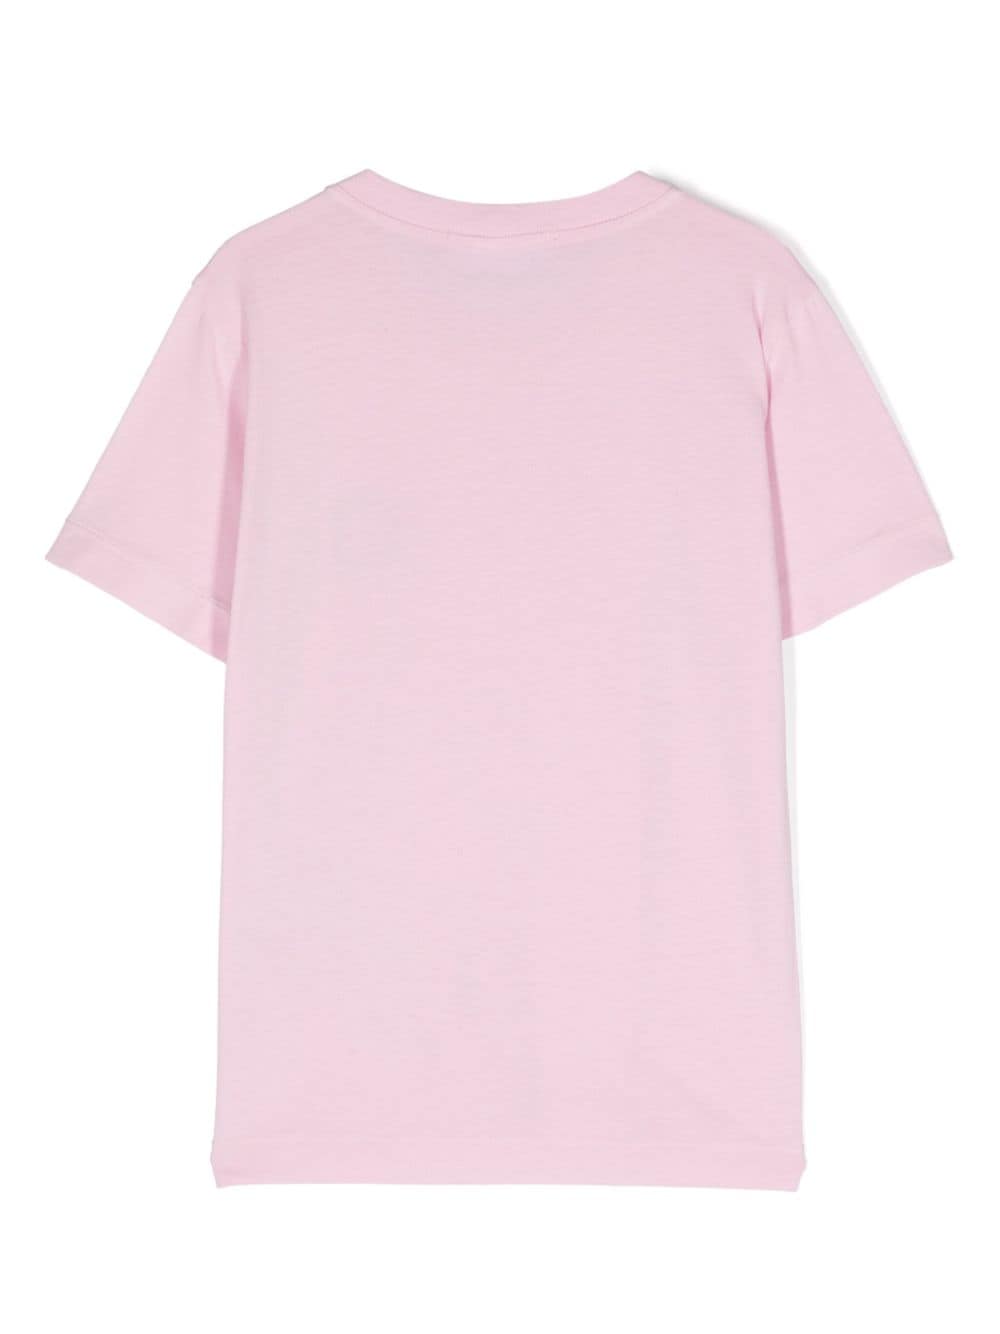 T-shirt rose unisexe